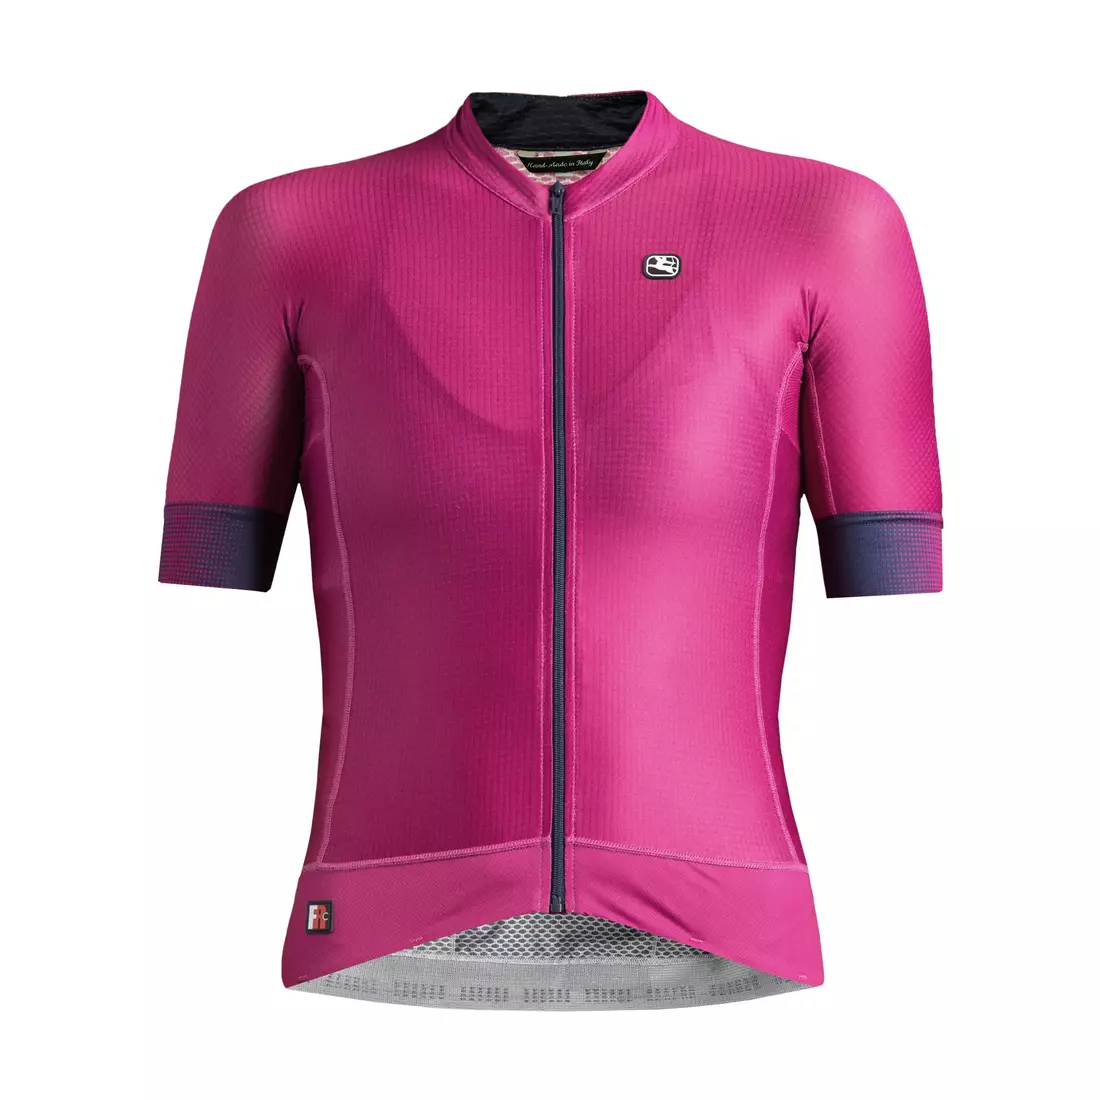 Dámský cyklistický dres GIORDANA FR-C PRO, fialový